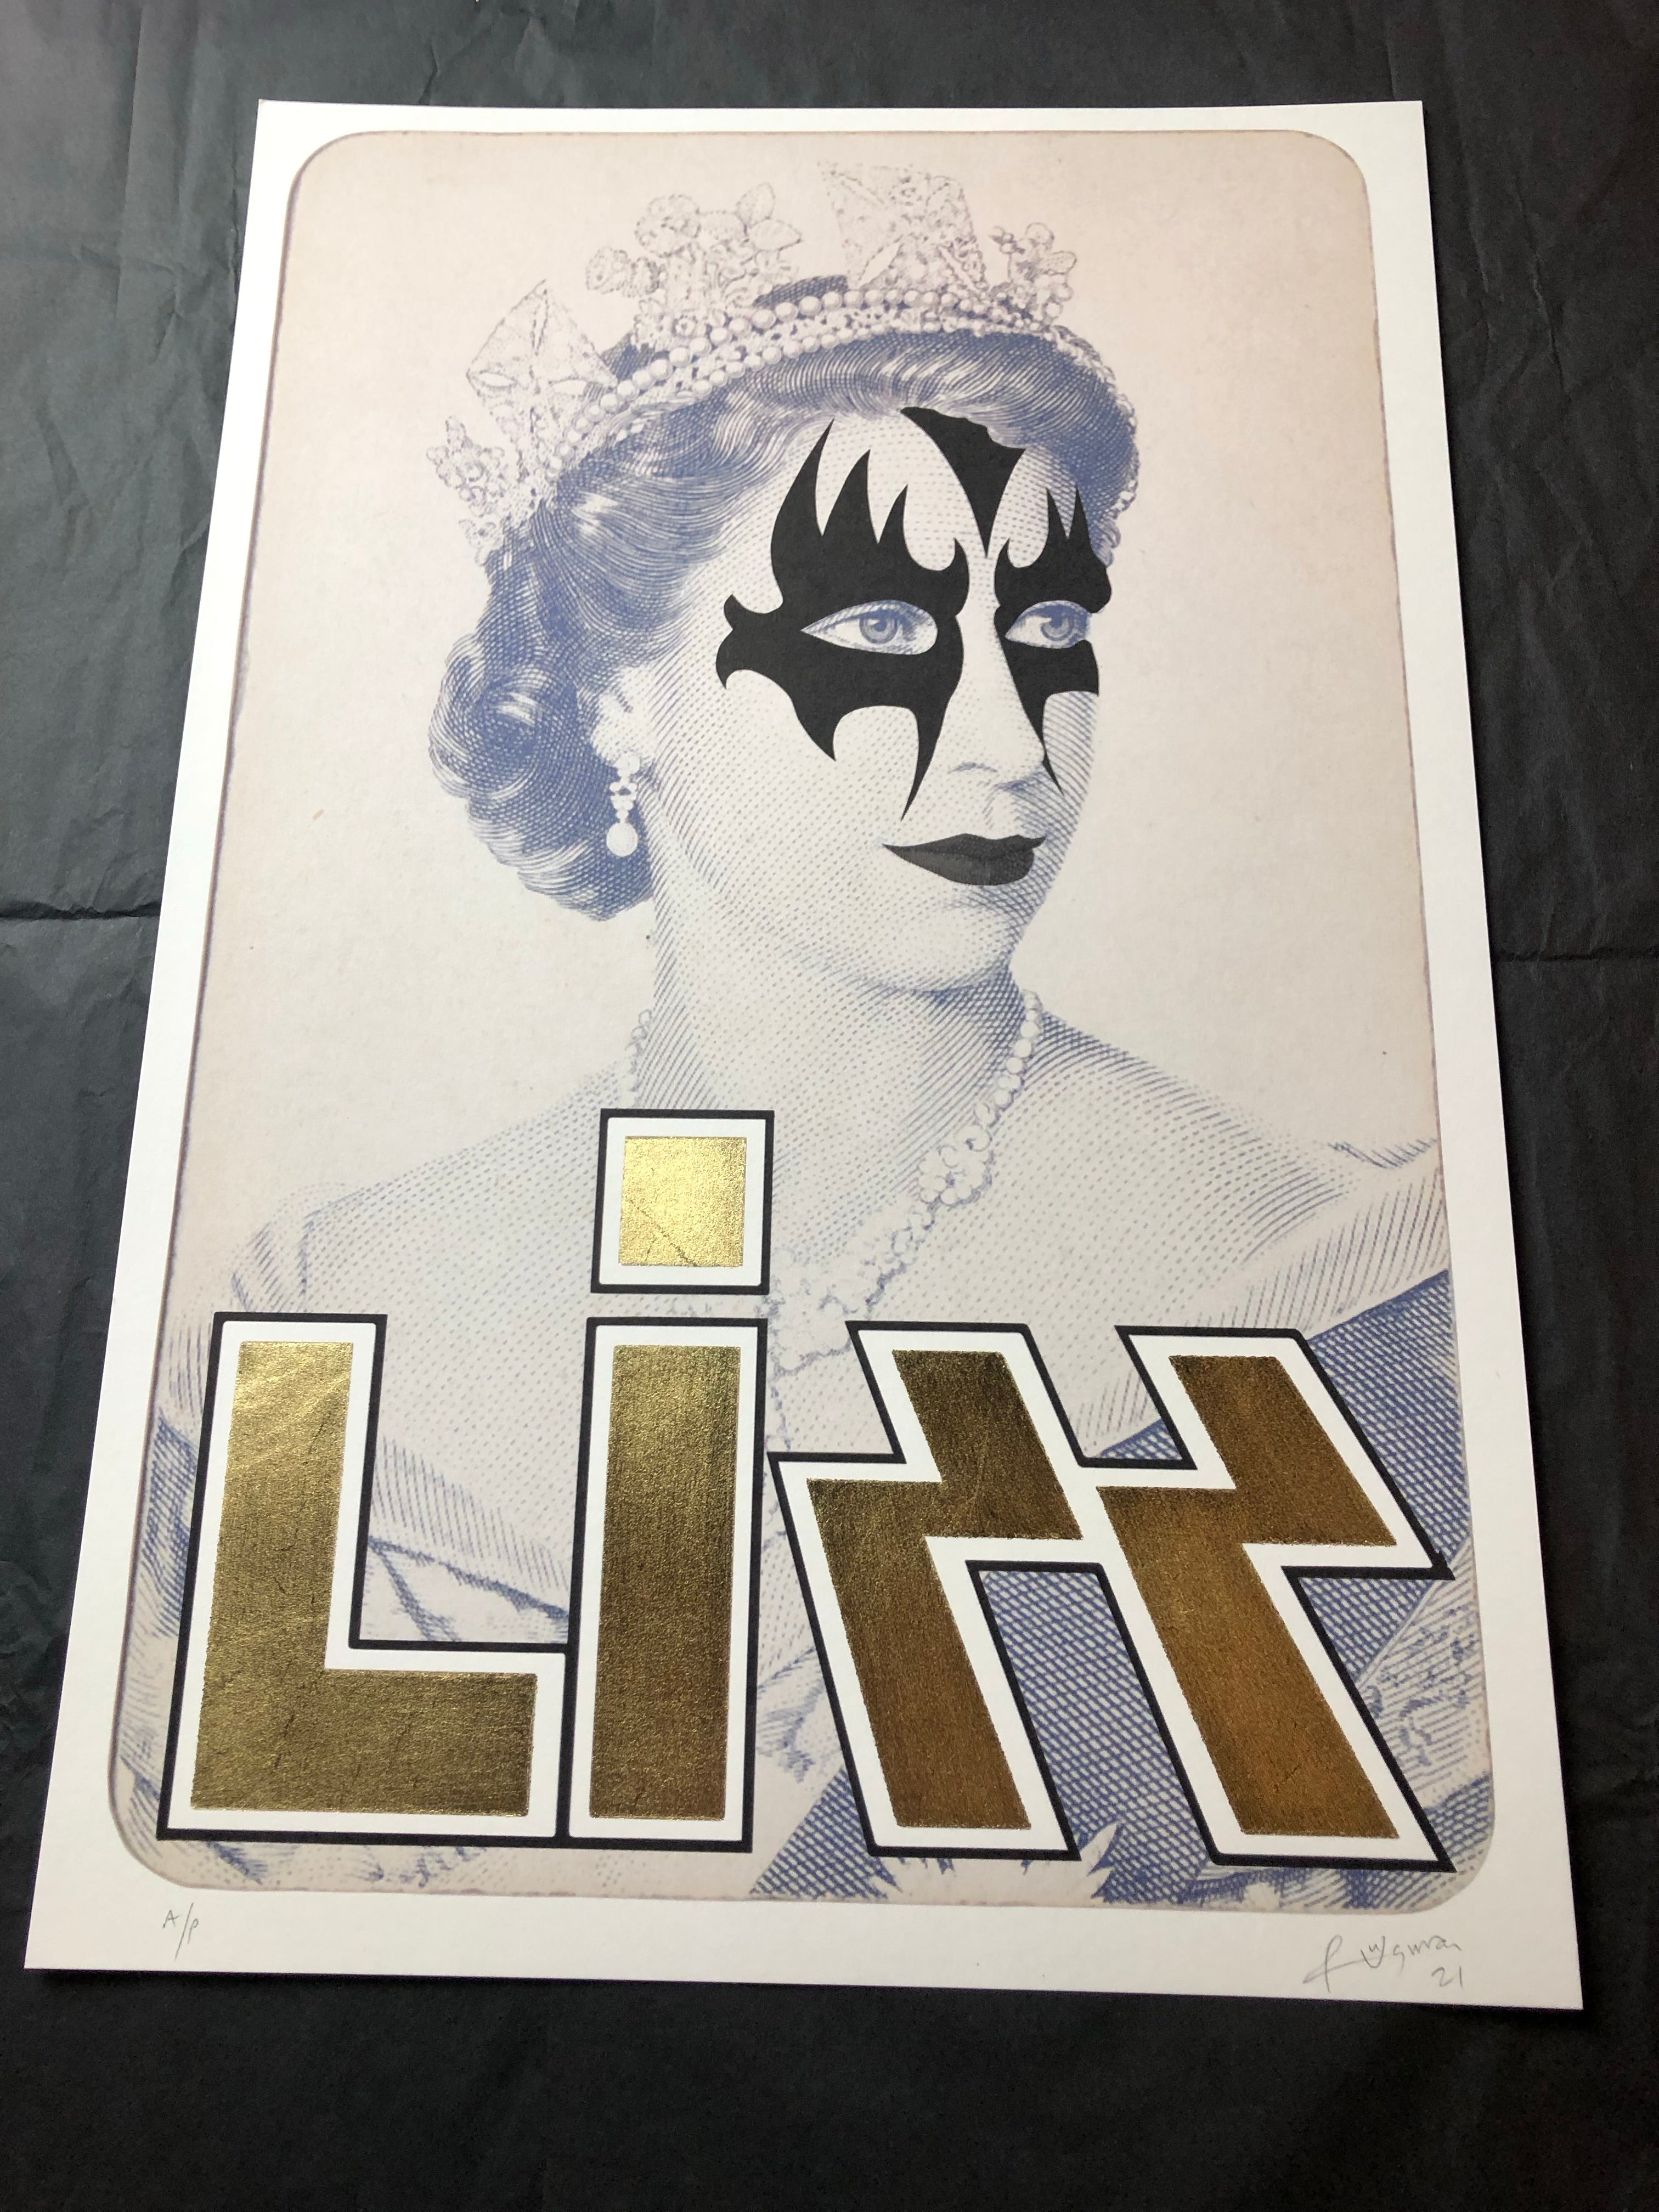 LIZZ Gene - Impresión de edición limitada de Rock Royalty